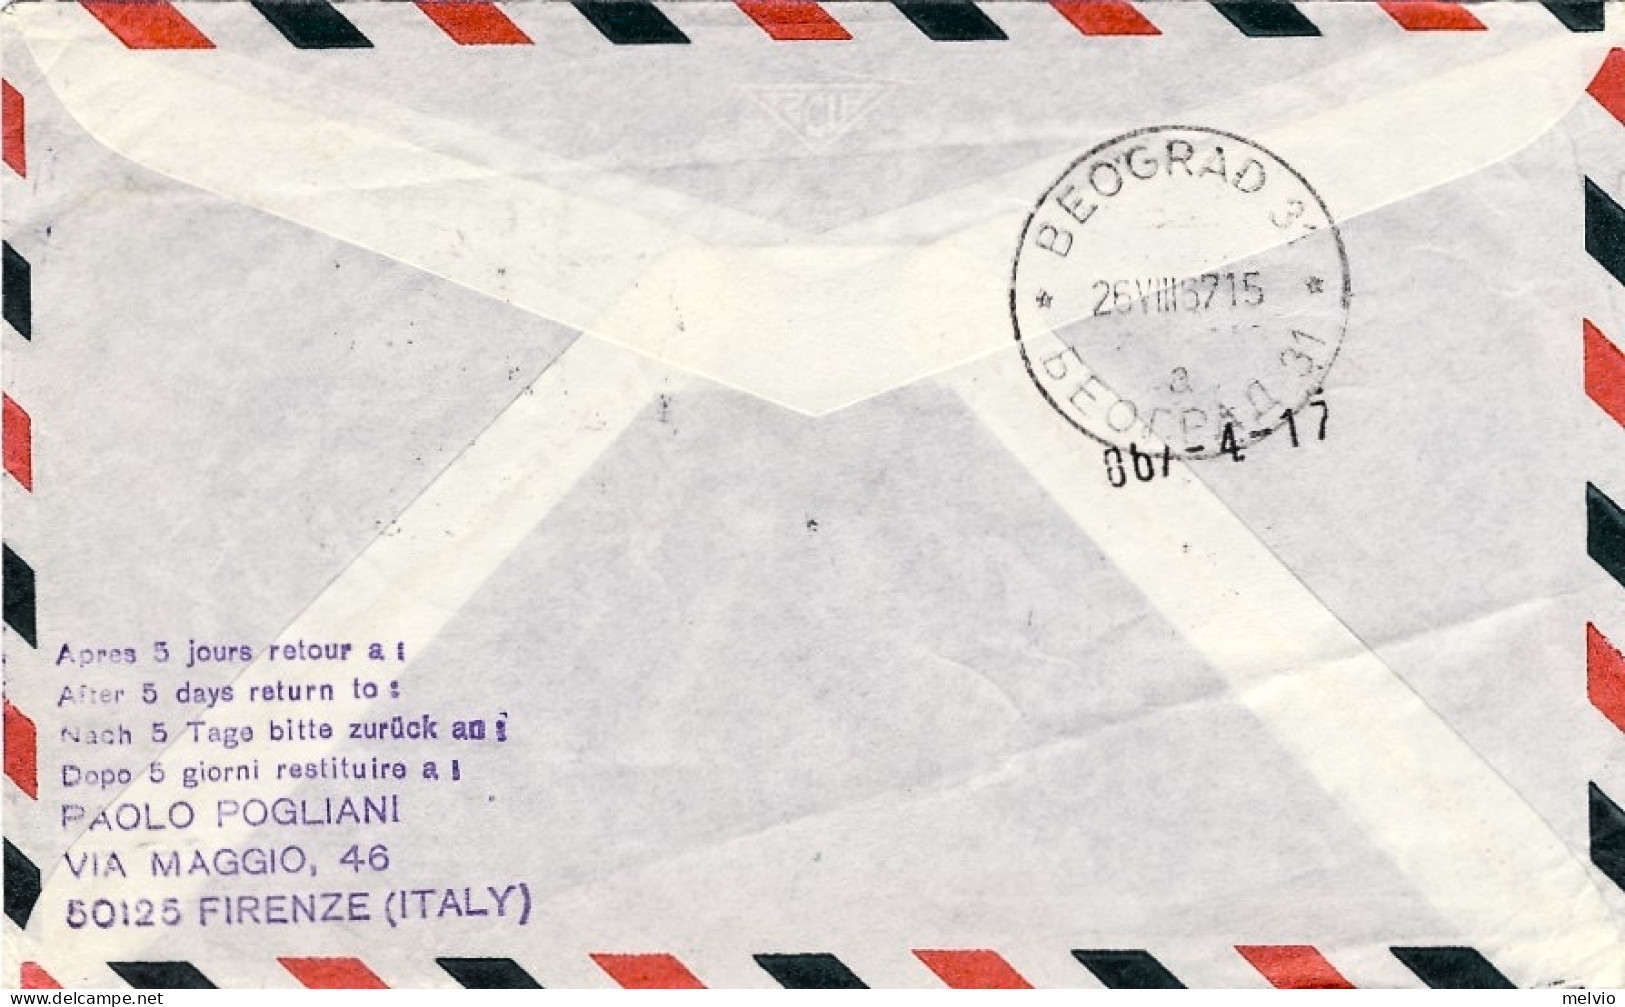 San Marino-1967 I^volo Lufthansa LH 194 Monaco-Belgrado - Posta Aerea